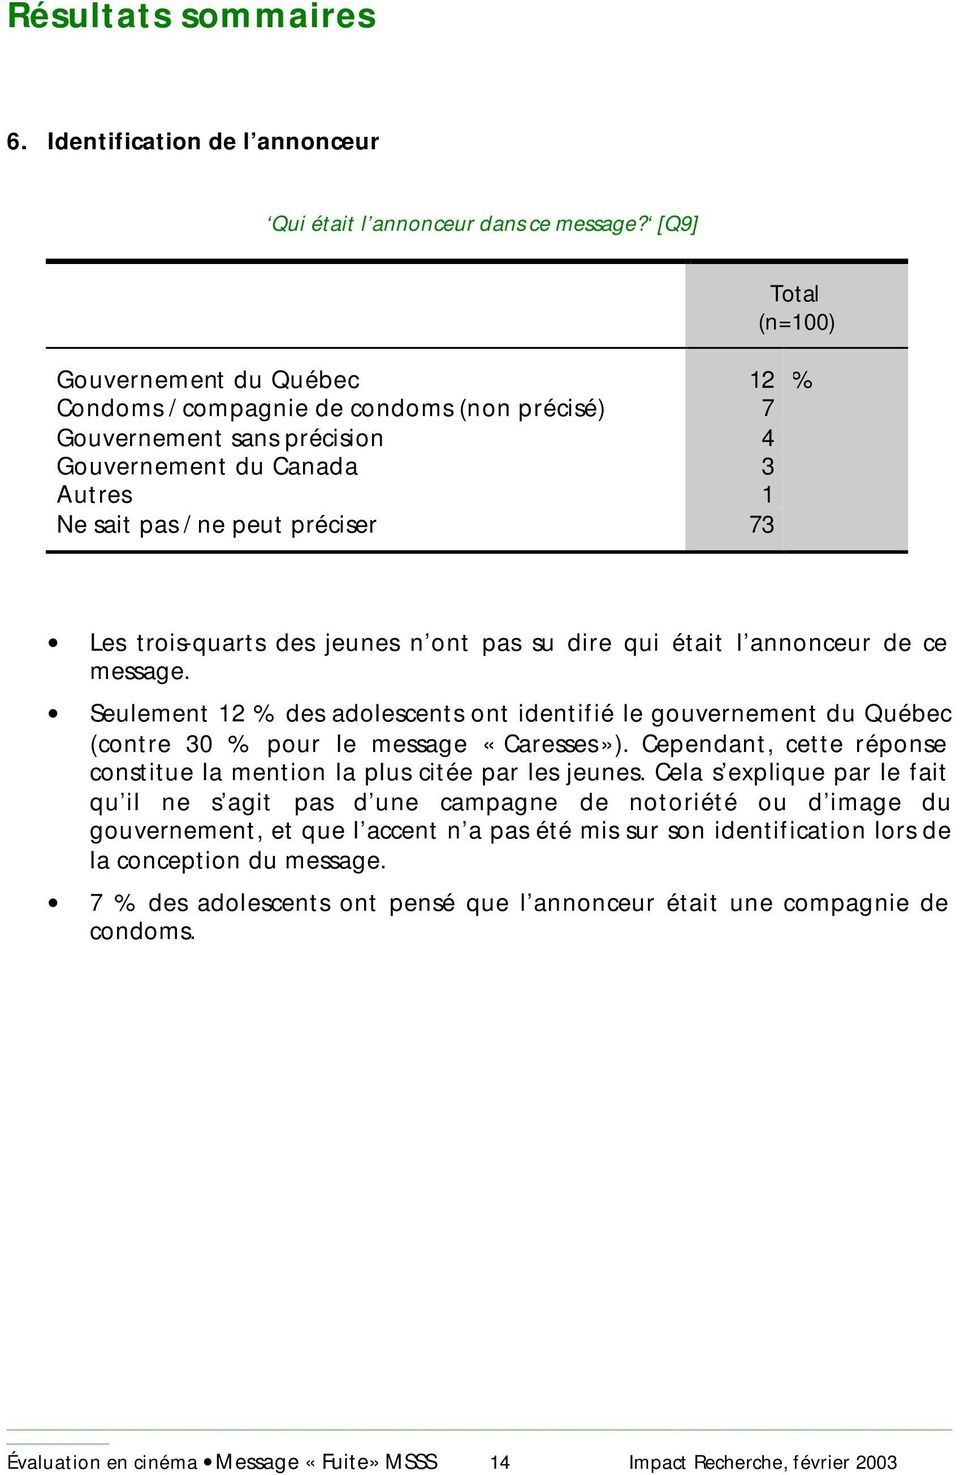 jeunes n ont pas su dire qui était l annonceur de ce message. Seulement 12 % des adolescents ont identifié le gouvernement du Québec (contre 30 % pour le message «Caresses»).